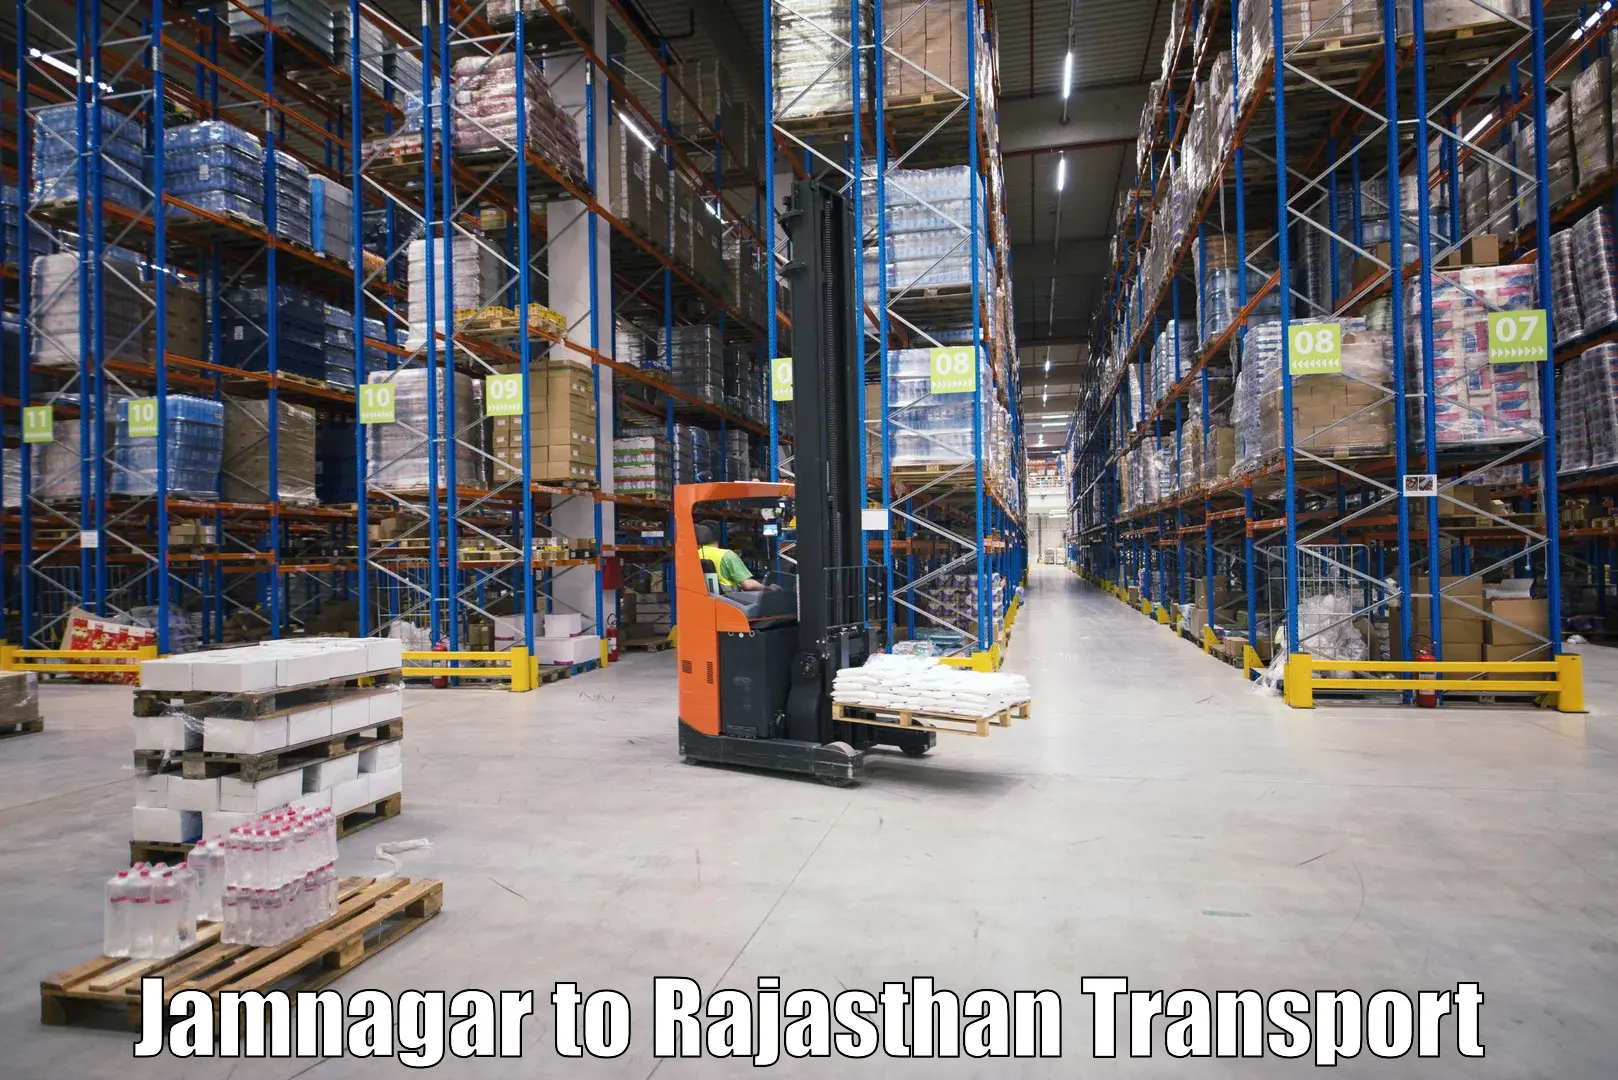 Cargo transport services Jamnagar to Jodhpur